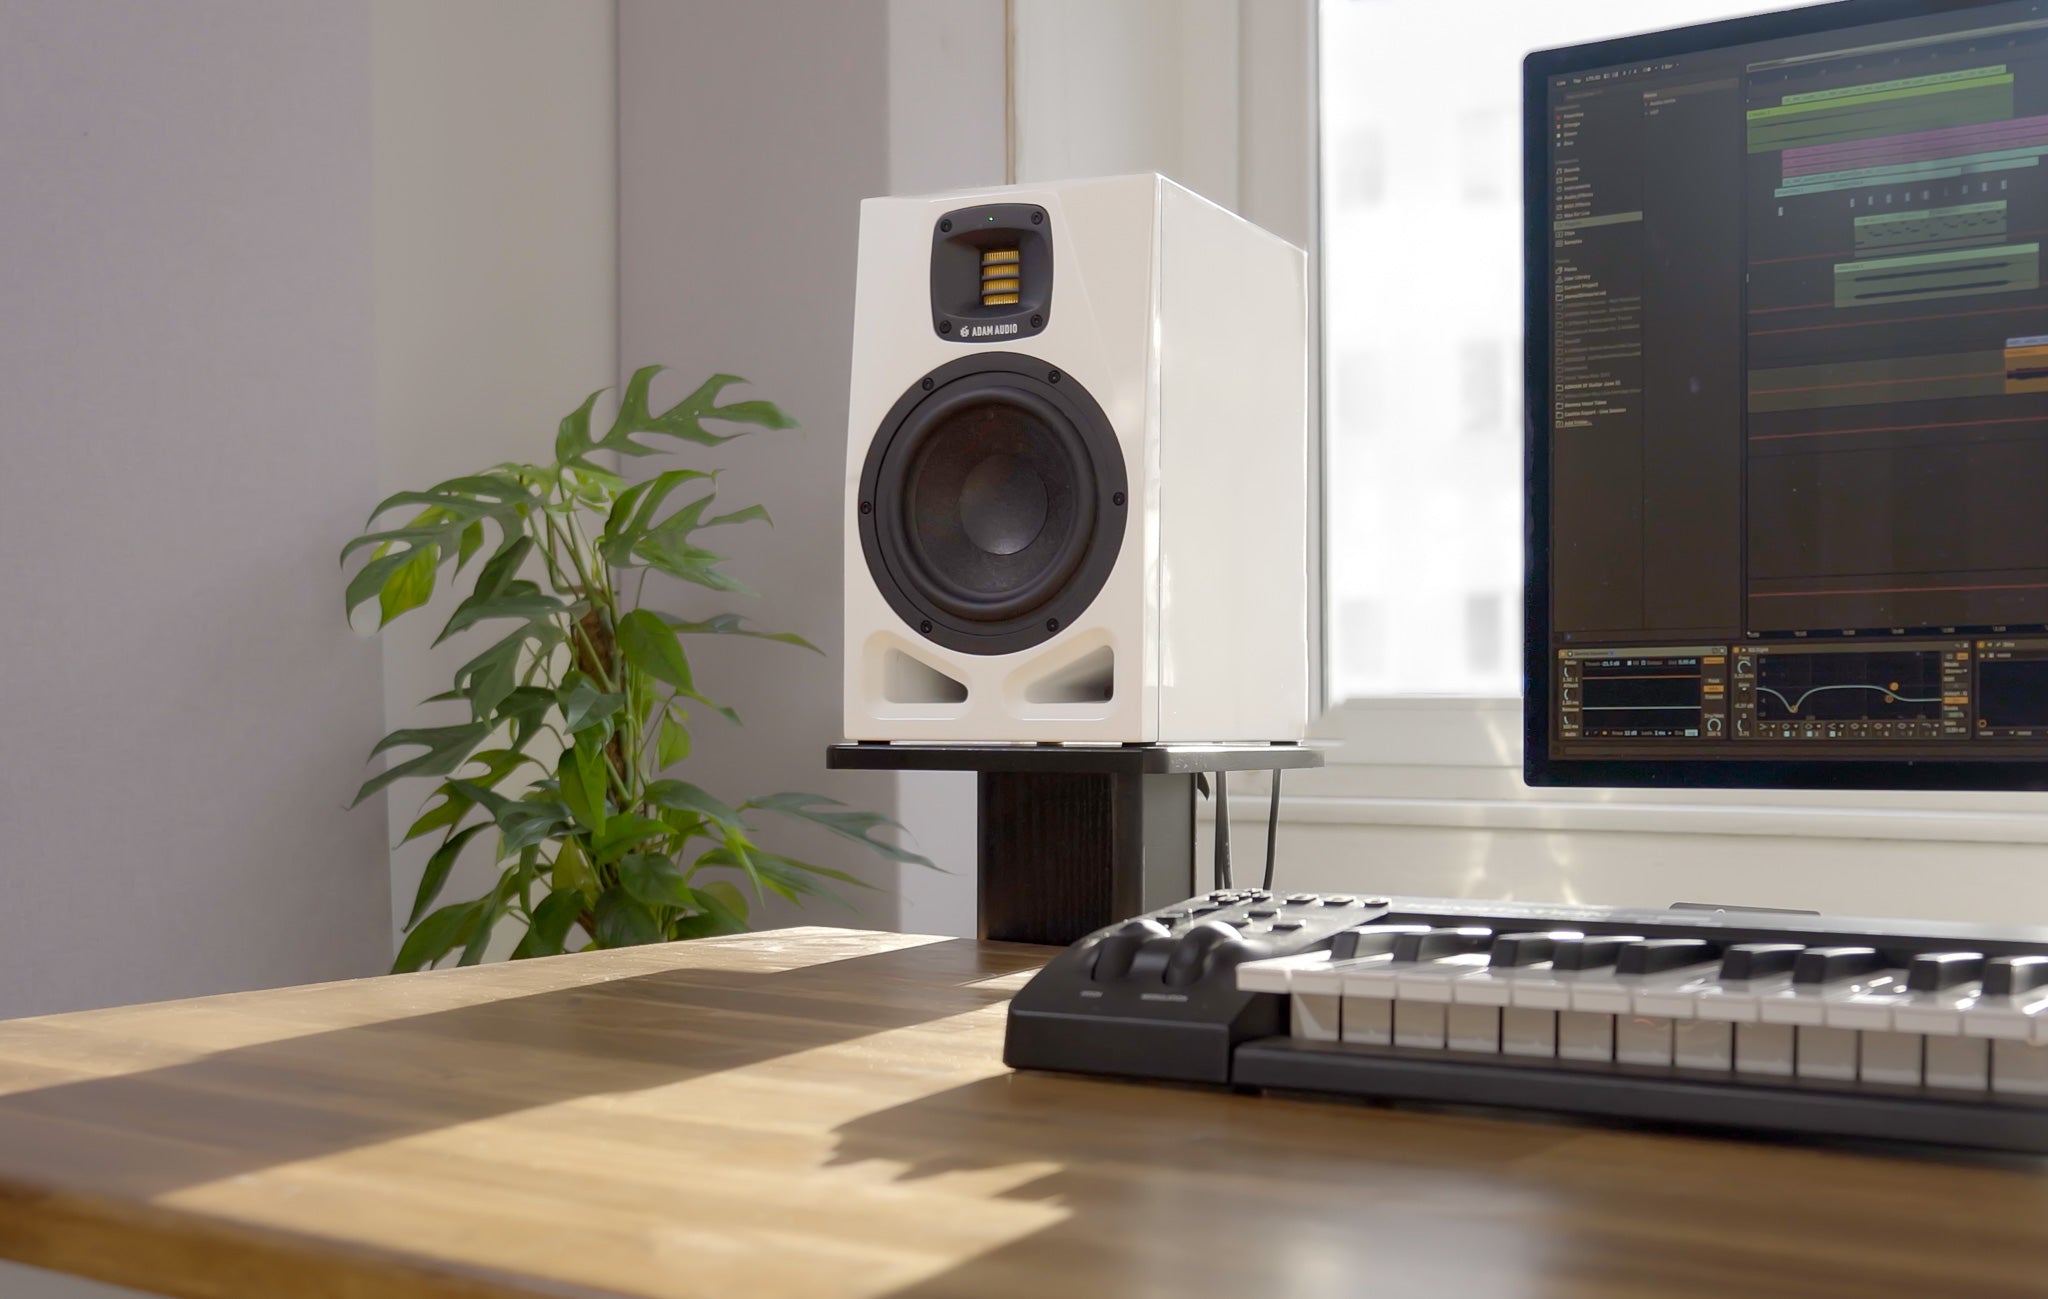 Adam Audio A7V Studio Monitor Limited Edition White